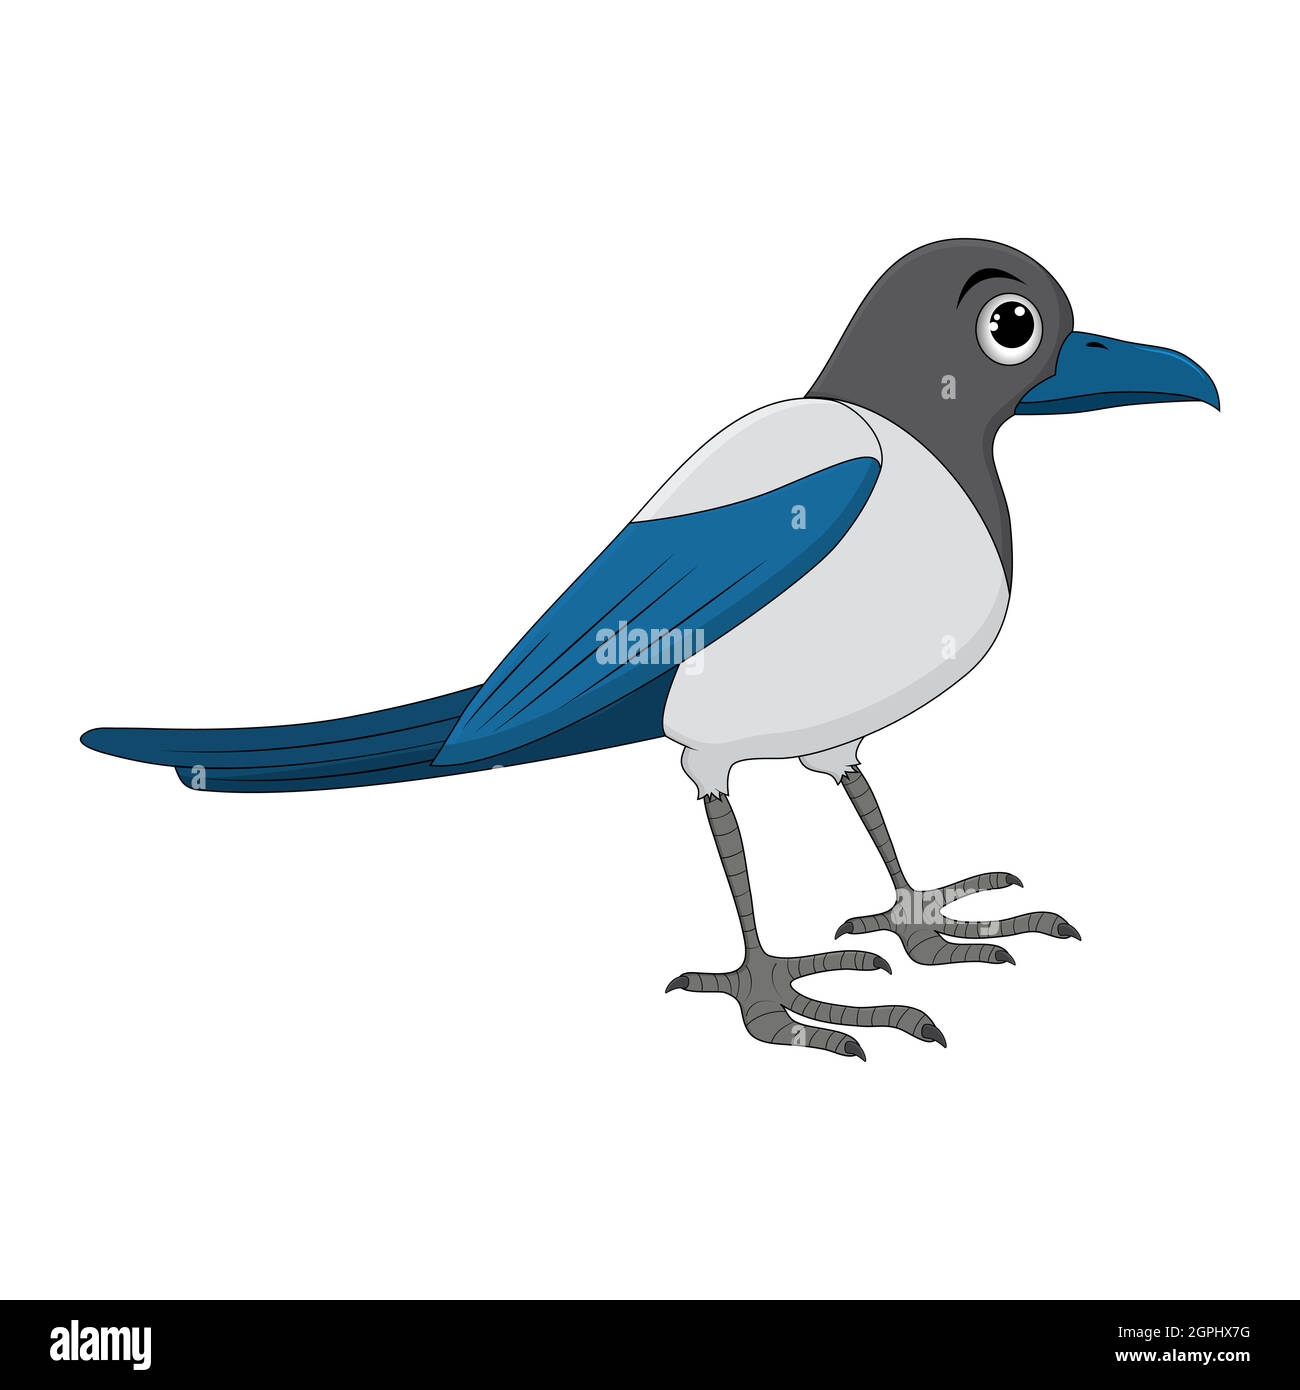 Illustrazione del cartone animato di uccello di Magpie. Disegno di ornitologia animale di corvo in piedi. Clip art vettoriale isolato su sfondo bianco. Illustrazione Vettoriale